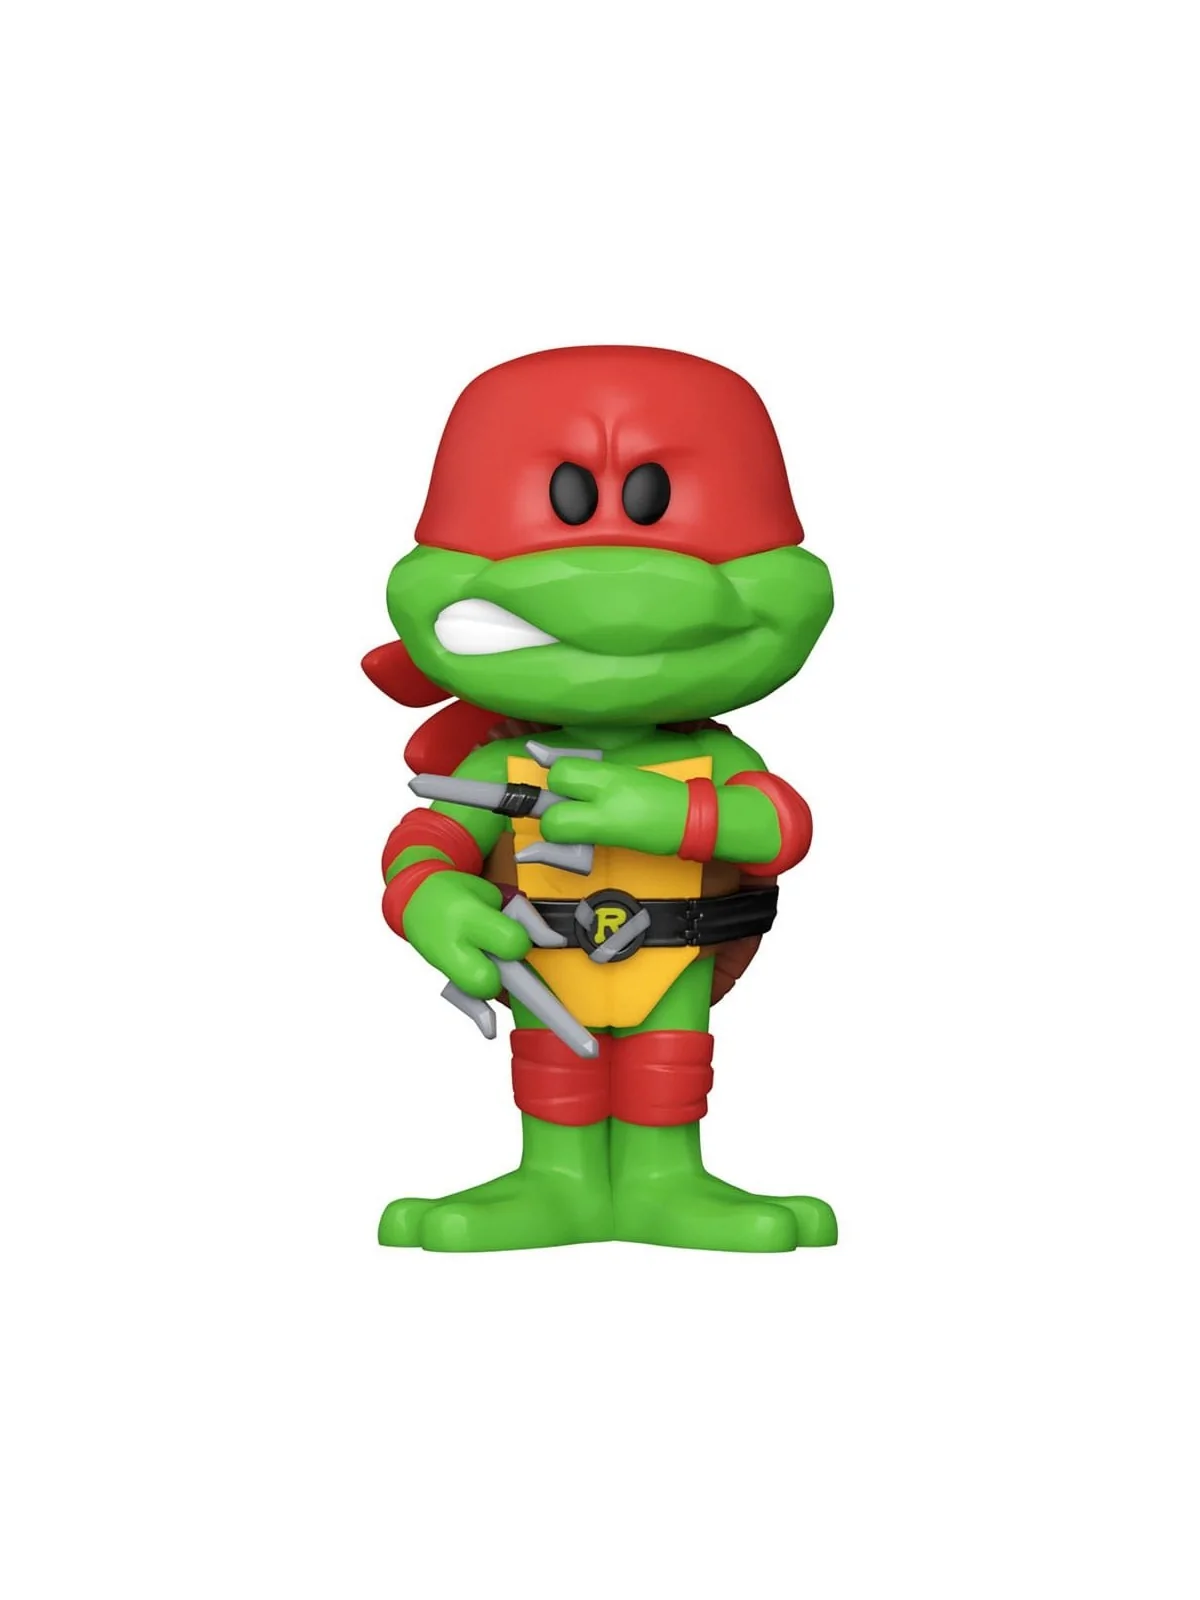 Comprar Funko Soda: Tortugas Ninja - Raphael barato al mejor precio 17